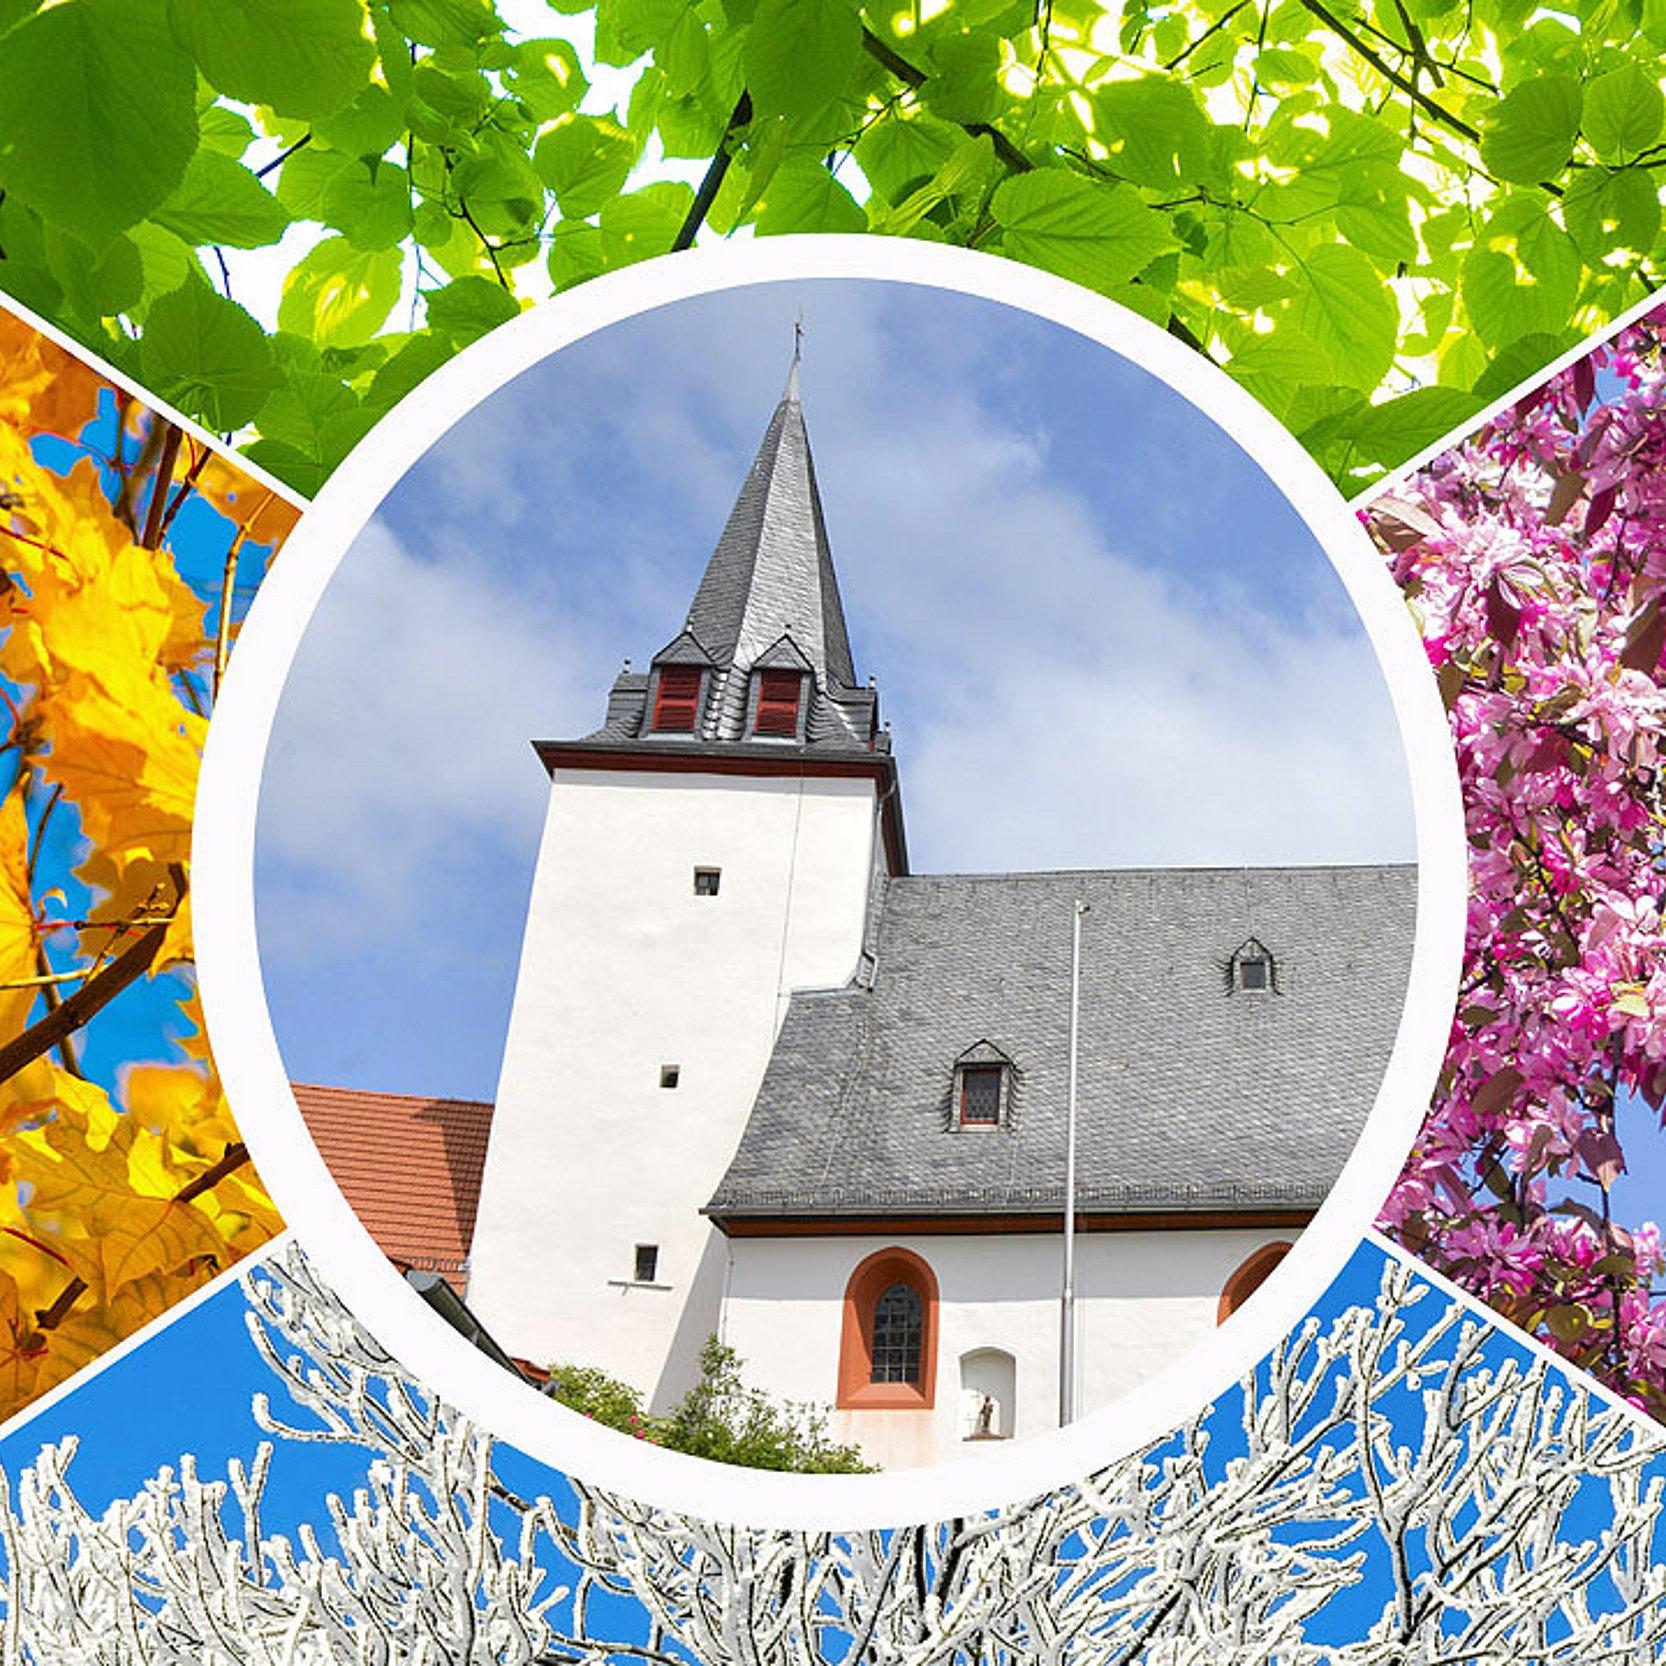 Kirchturm inmitten der 4 Jahreszeiten (rosa Blüten, grüne Blätter, Herbstlaub, verschneite Äste)